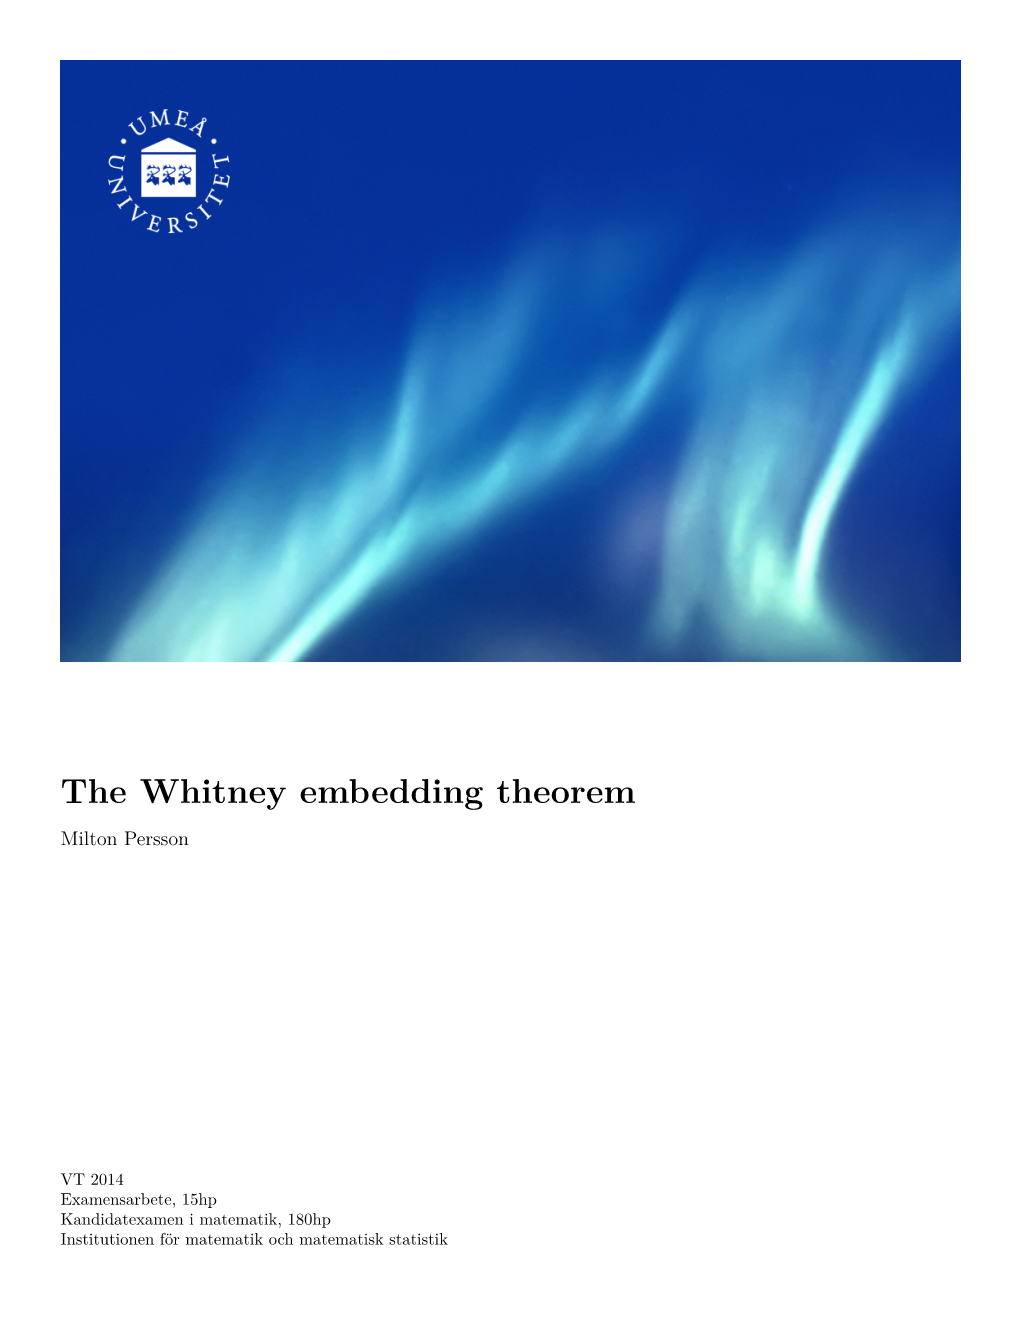 The Whitney Embedding Theorem Milton Persson